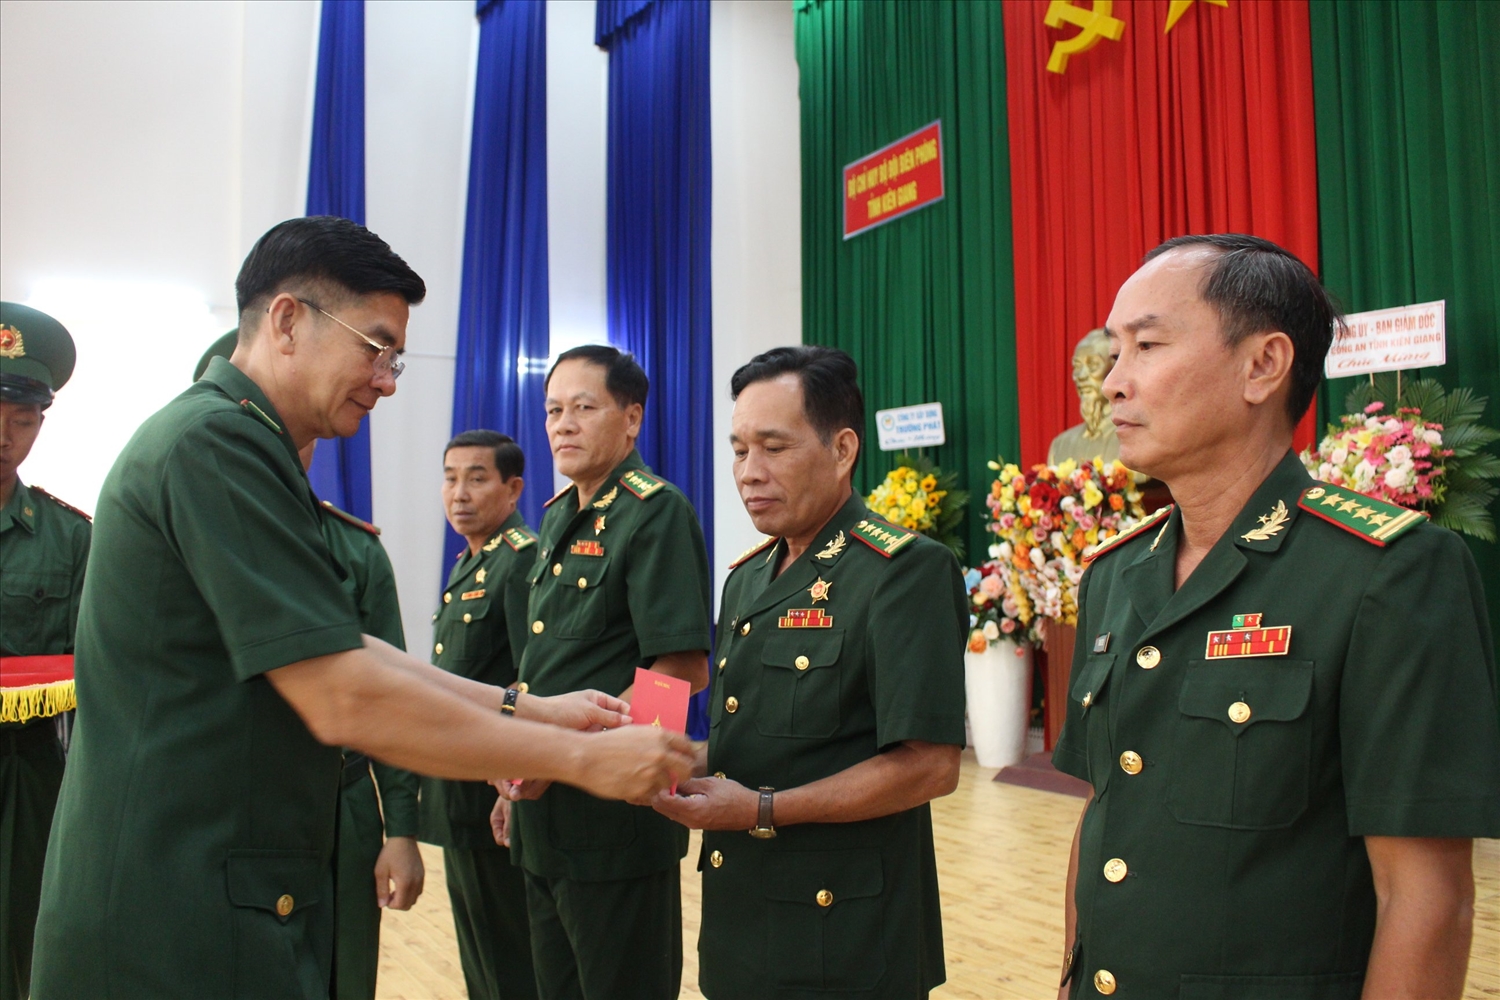 Đại tá Huỳnh Văn Đông trao Kỷ niệm chương đến các cá nhân trong BĐBP tỉnh